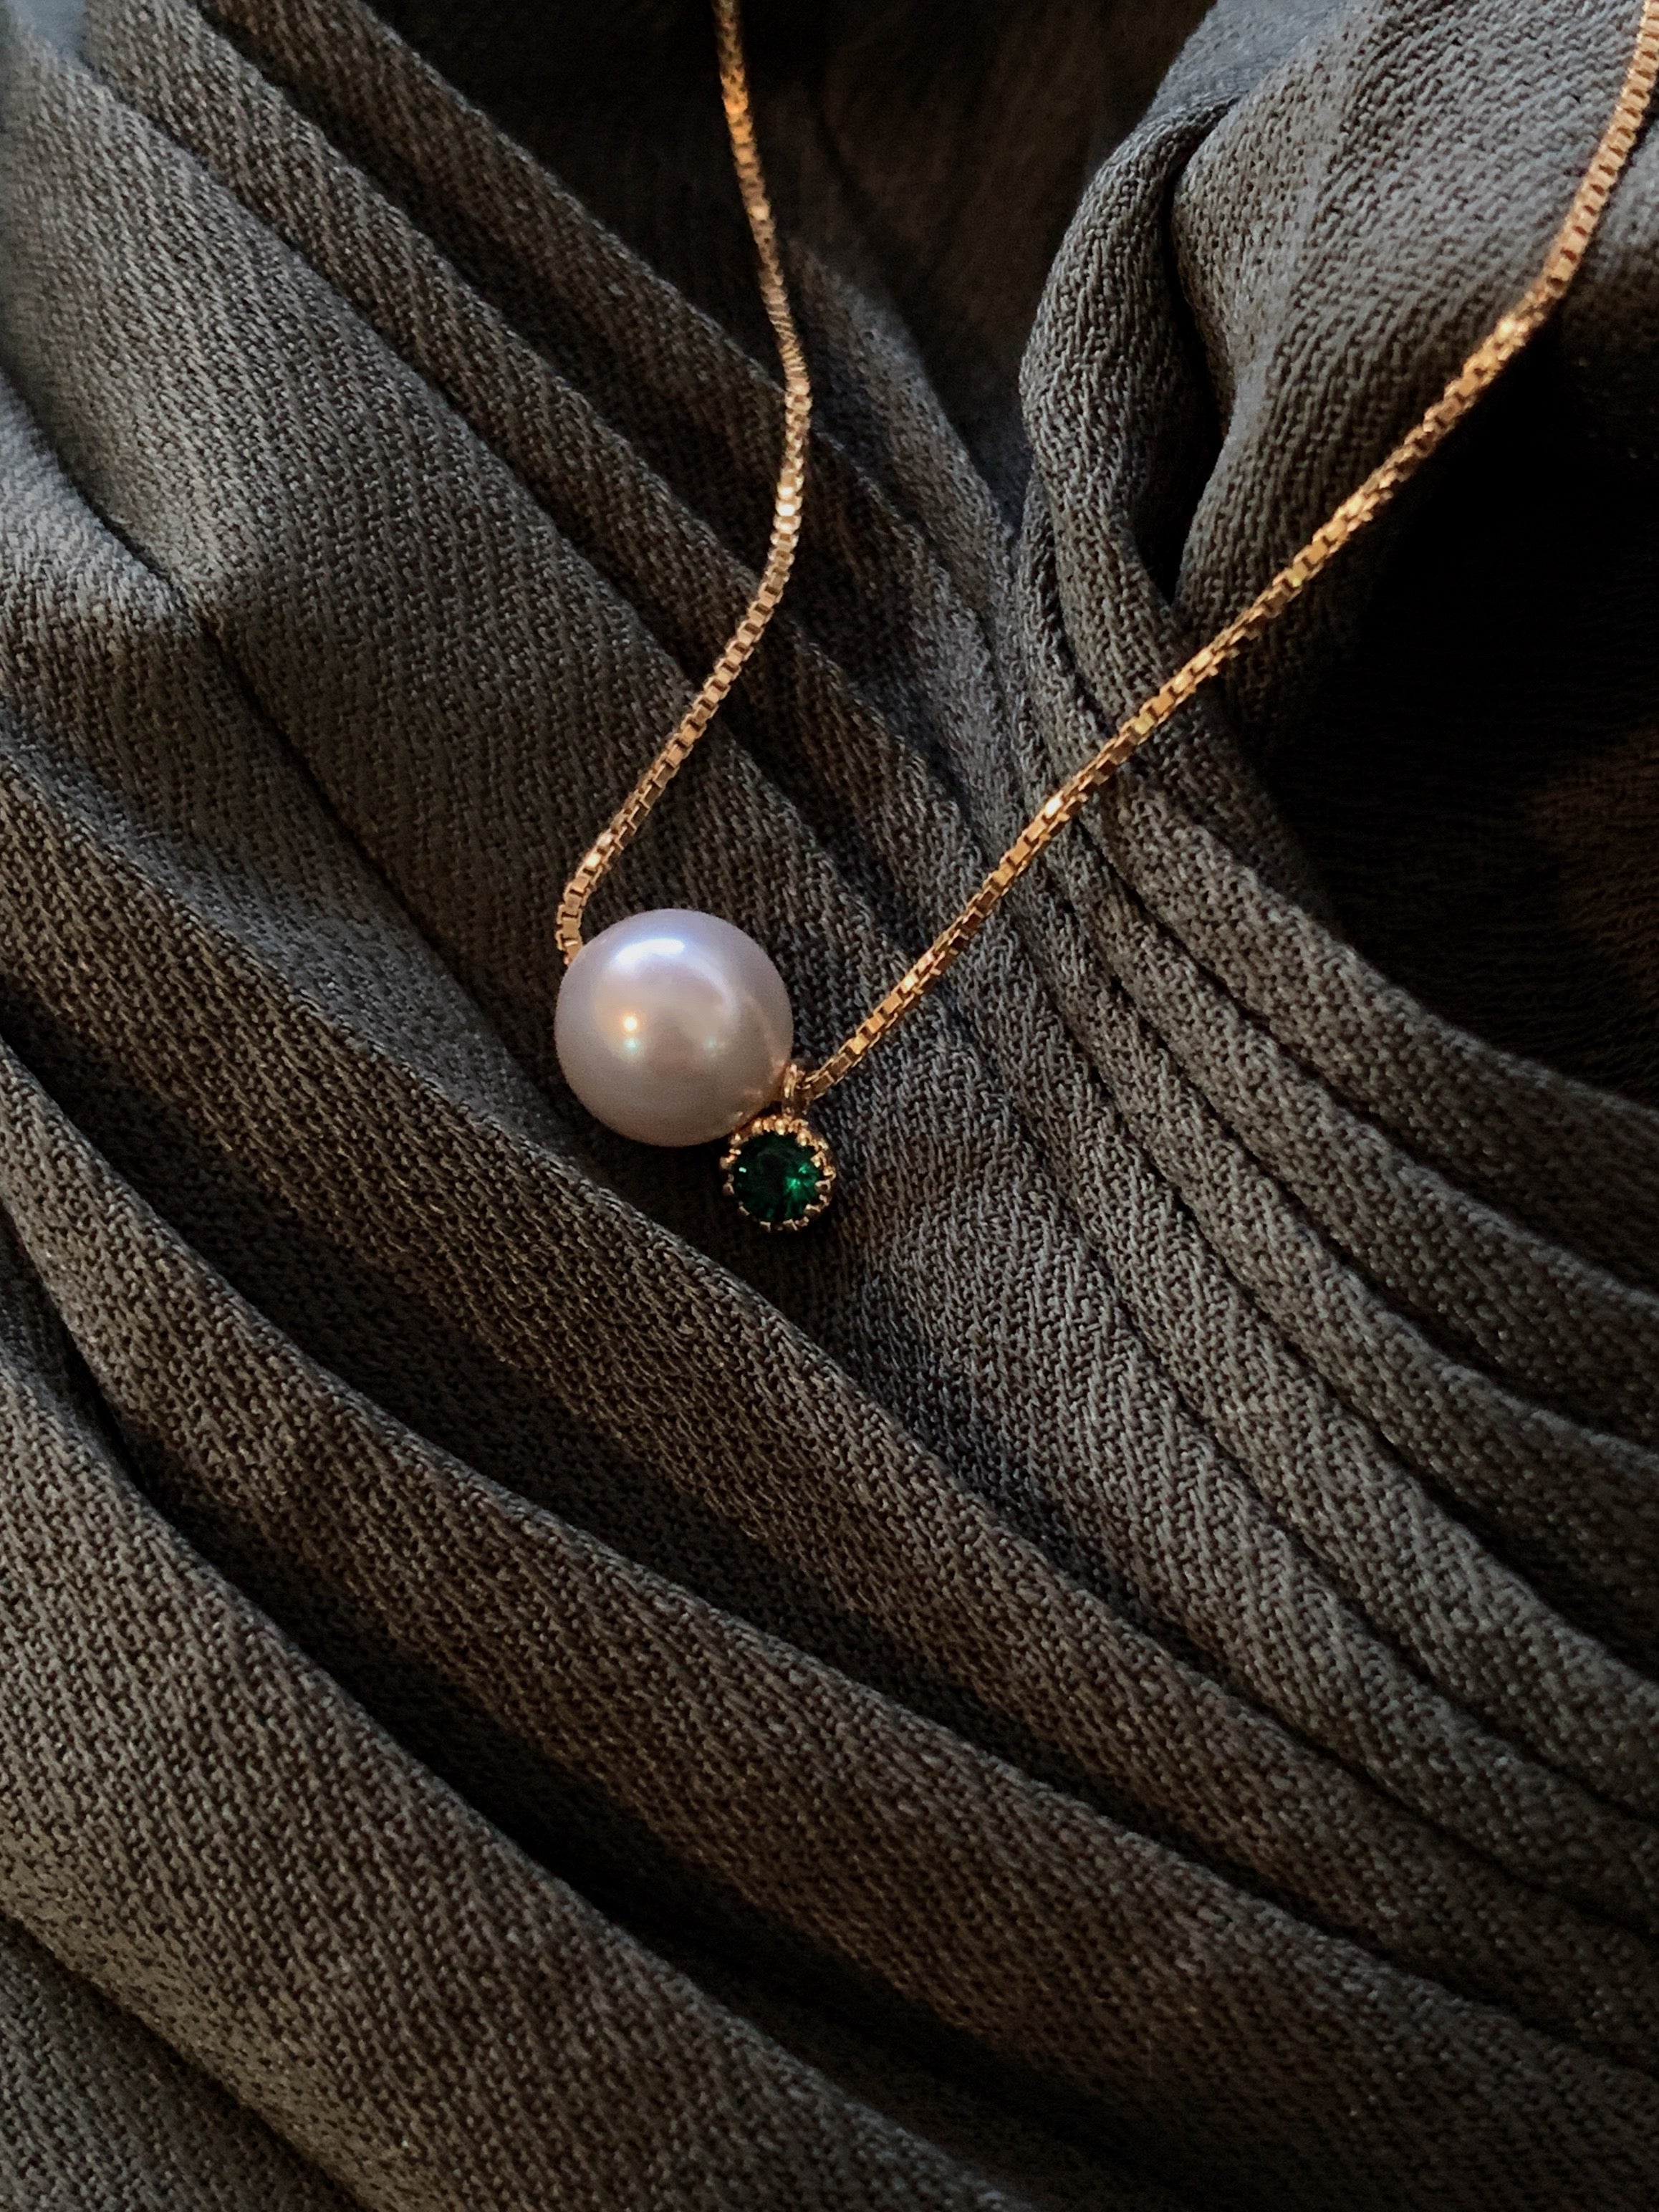 【母親節禮物】 超級禮-命定色-天然珍珠14KGF注金項鍊乾燥花禮盒